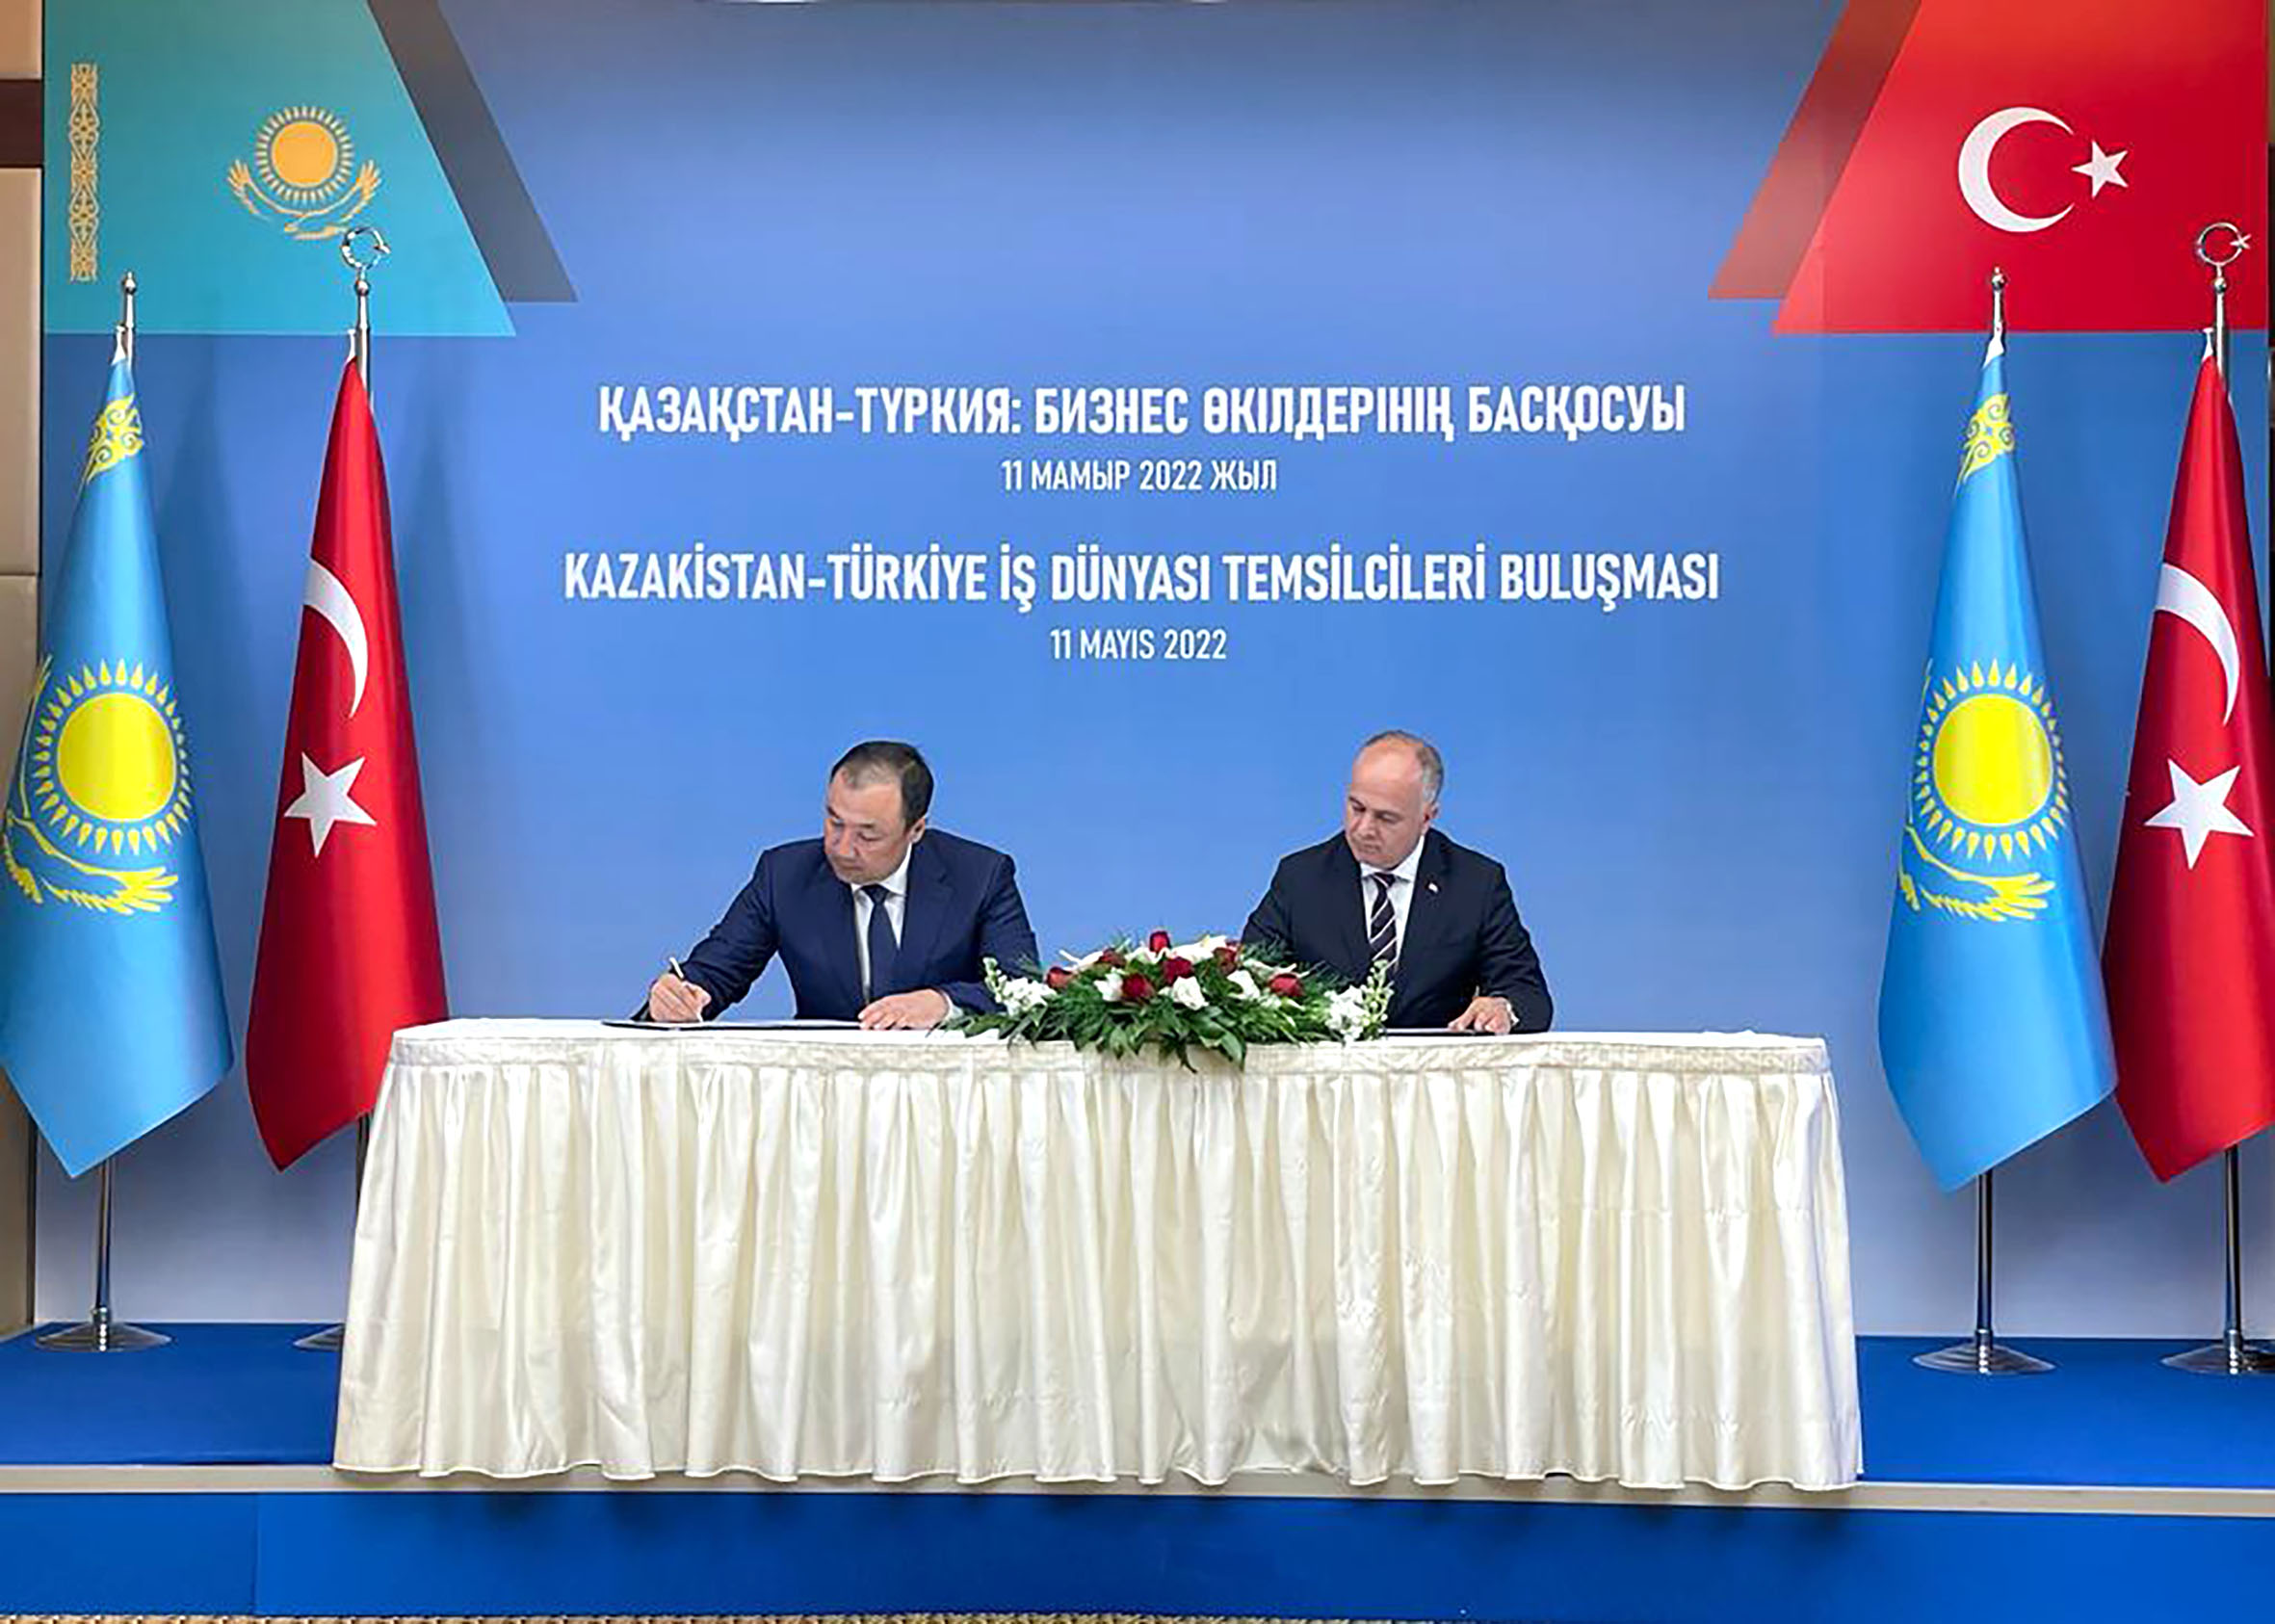 Сенат Казахстана одобрил ратификацию договора о транспортных связях с Турцией.